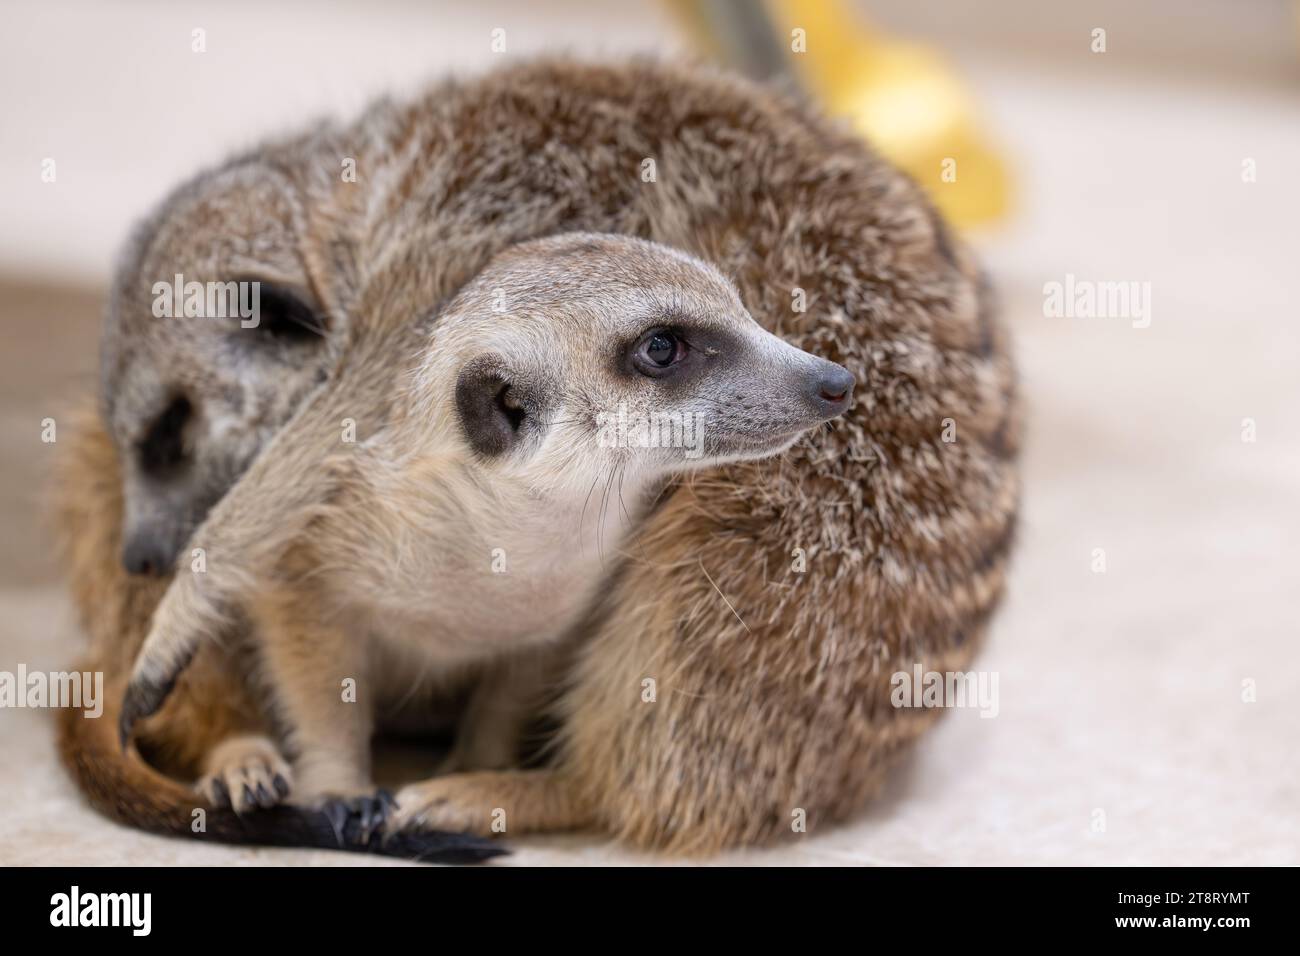 Meerkat being cuddled by sleeping meerkat Stock Photo